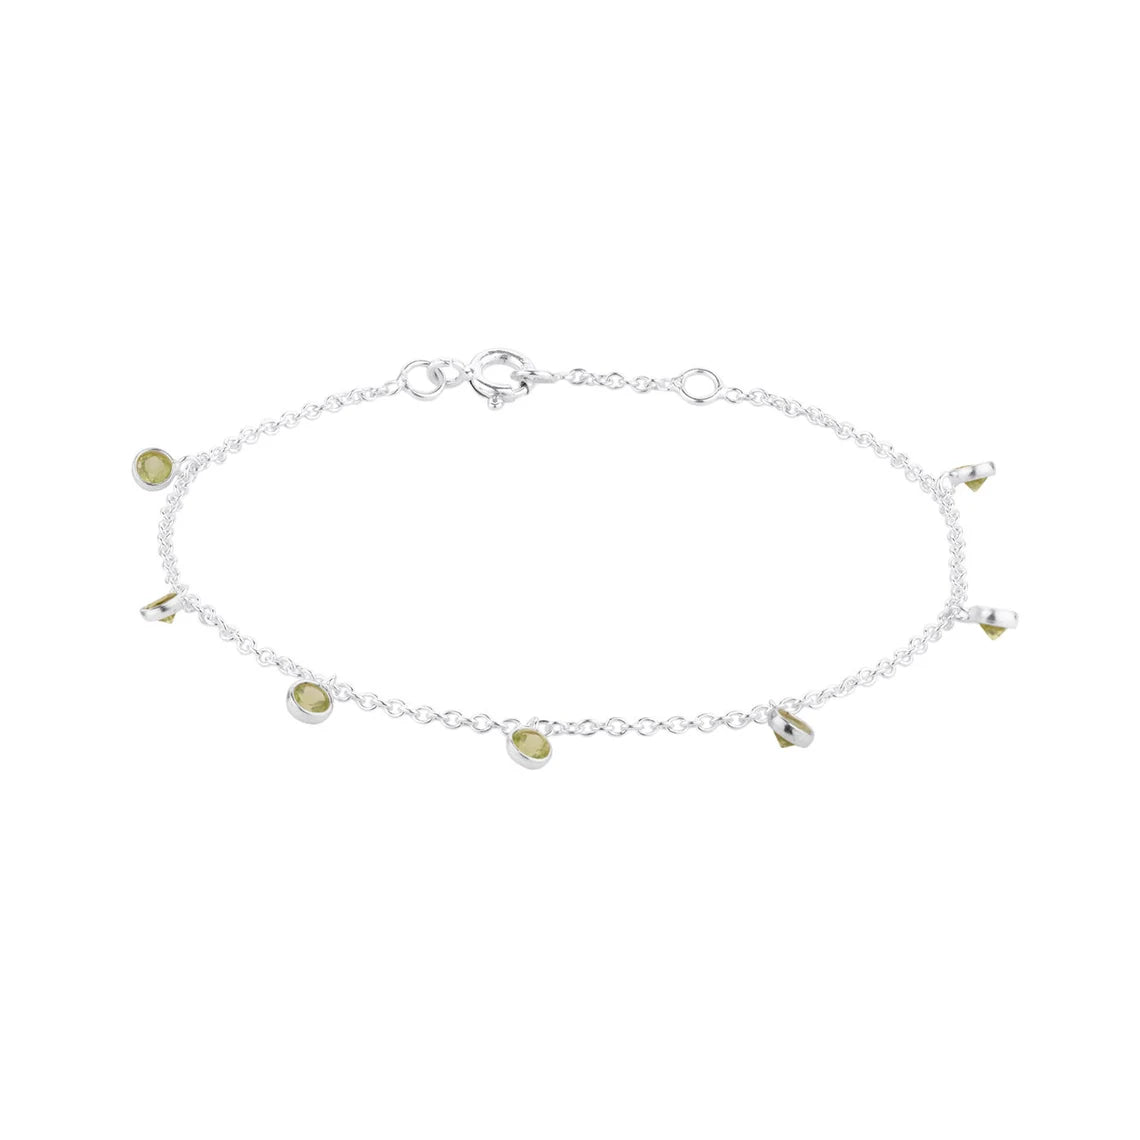 Natural Peridot Bracelet-Handmade Bracelet for Women-925 Sterling Silver Bracelet-Peridot Handmade Bracelet- Tiny Peridot Bracelet 7.5"